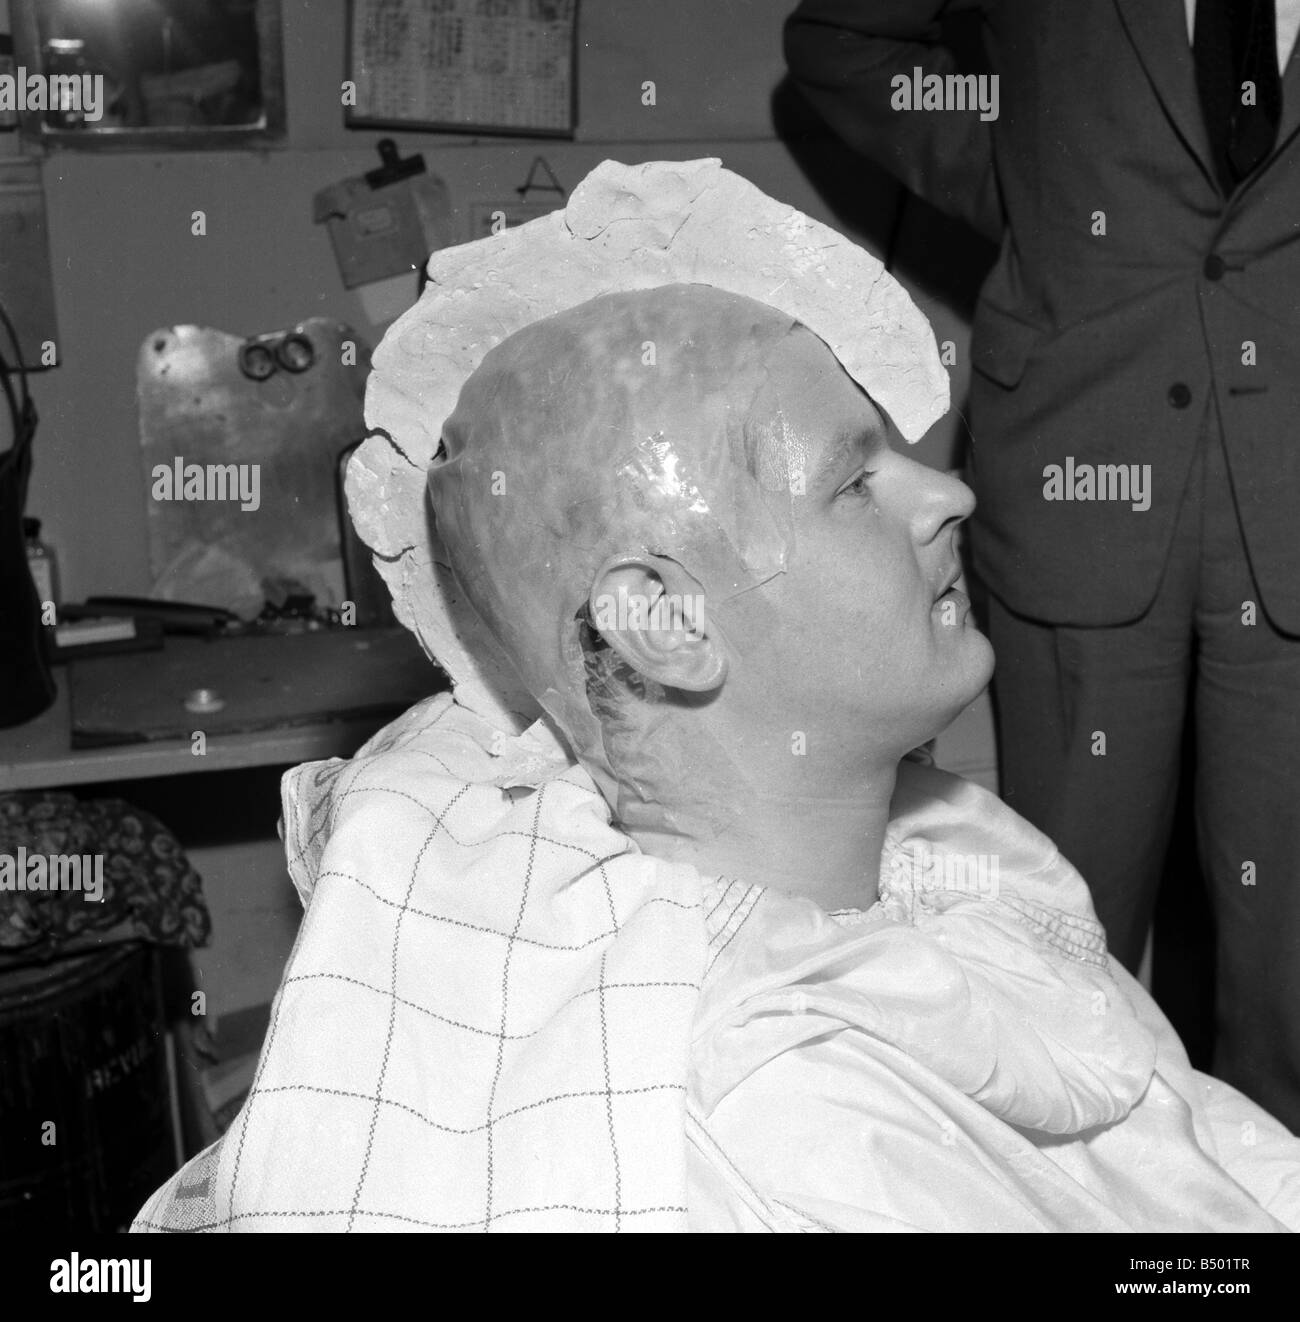 Benny Hill comédien ayant un plâtre de son crâne, une perruque peut être correctement équipé. &# 13 ;&# 10;Circa 1958&# 13 ;&# 10;tr Banque D'Images